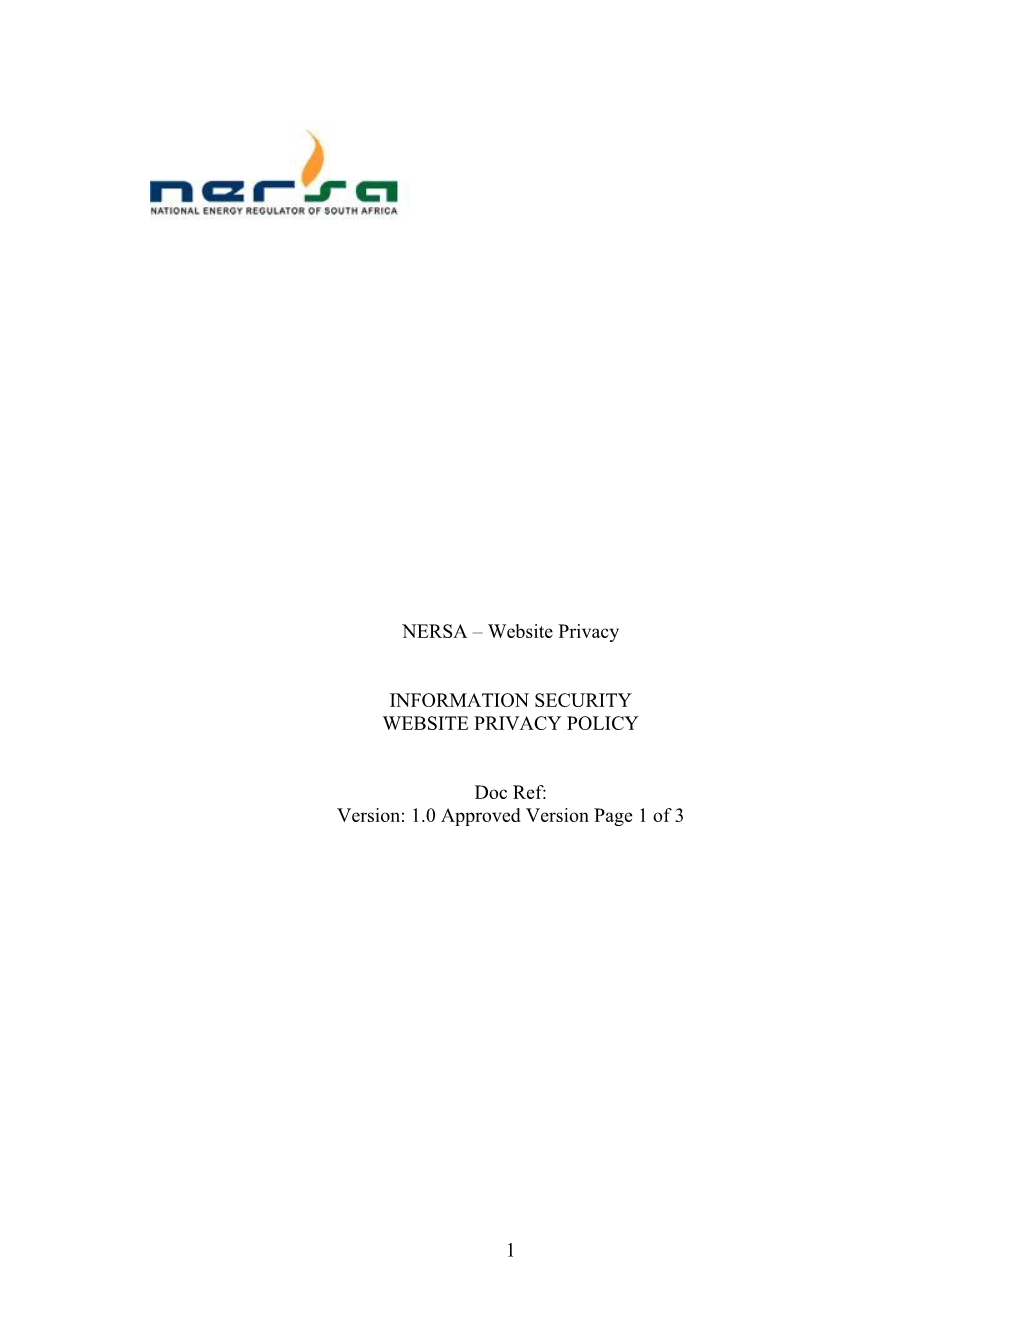 NERSA Website Privacy